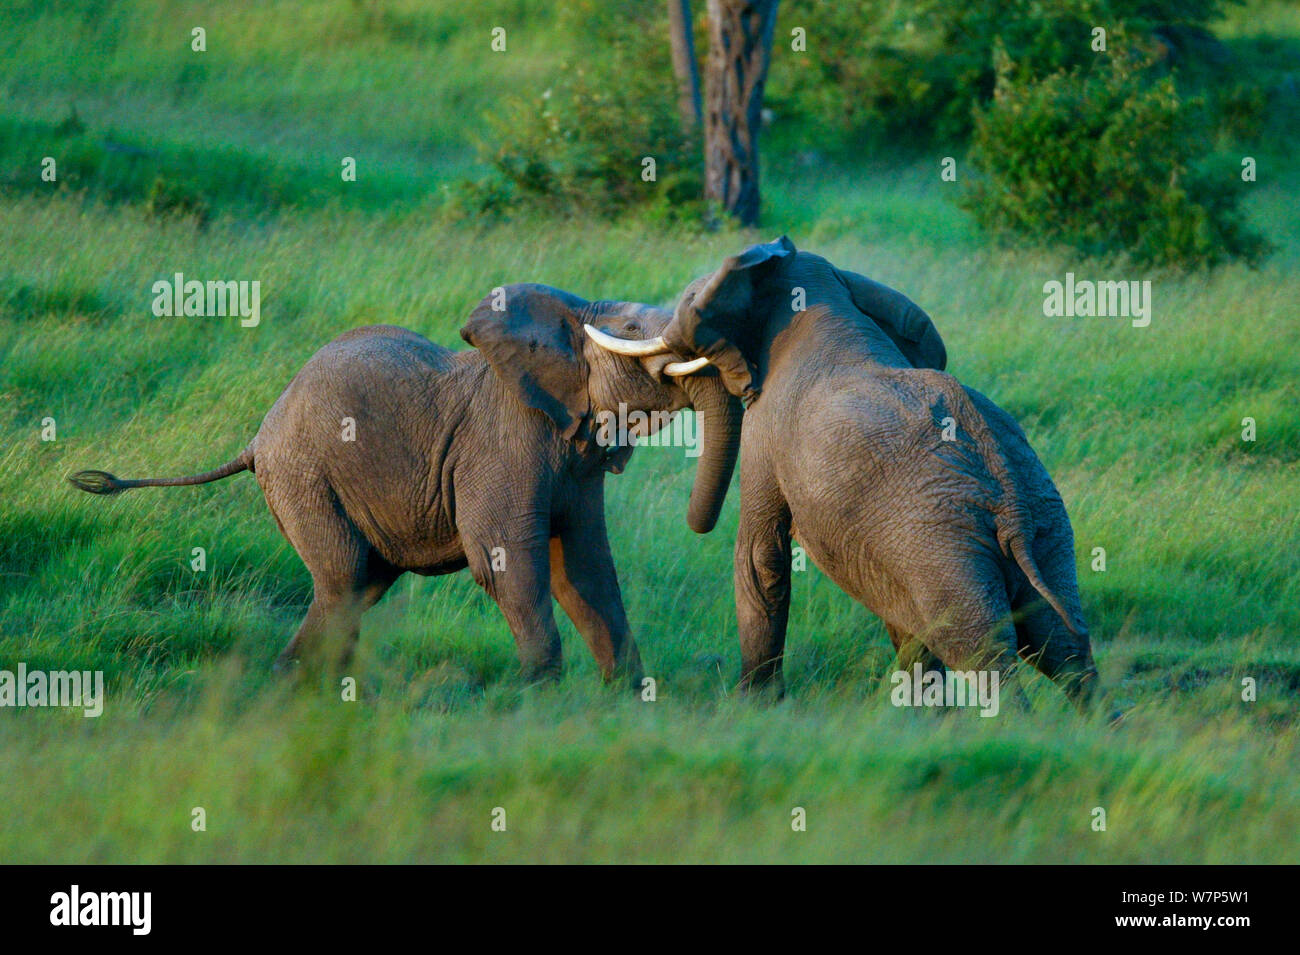 L'éléphant africain (Loxodonta africana), les mâles se battre. Masai-Mara Game Reserve, Kenya. La séquence 4 de 4. Banque D'Images